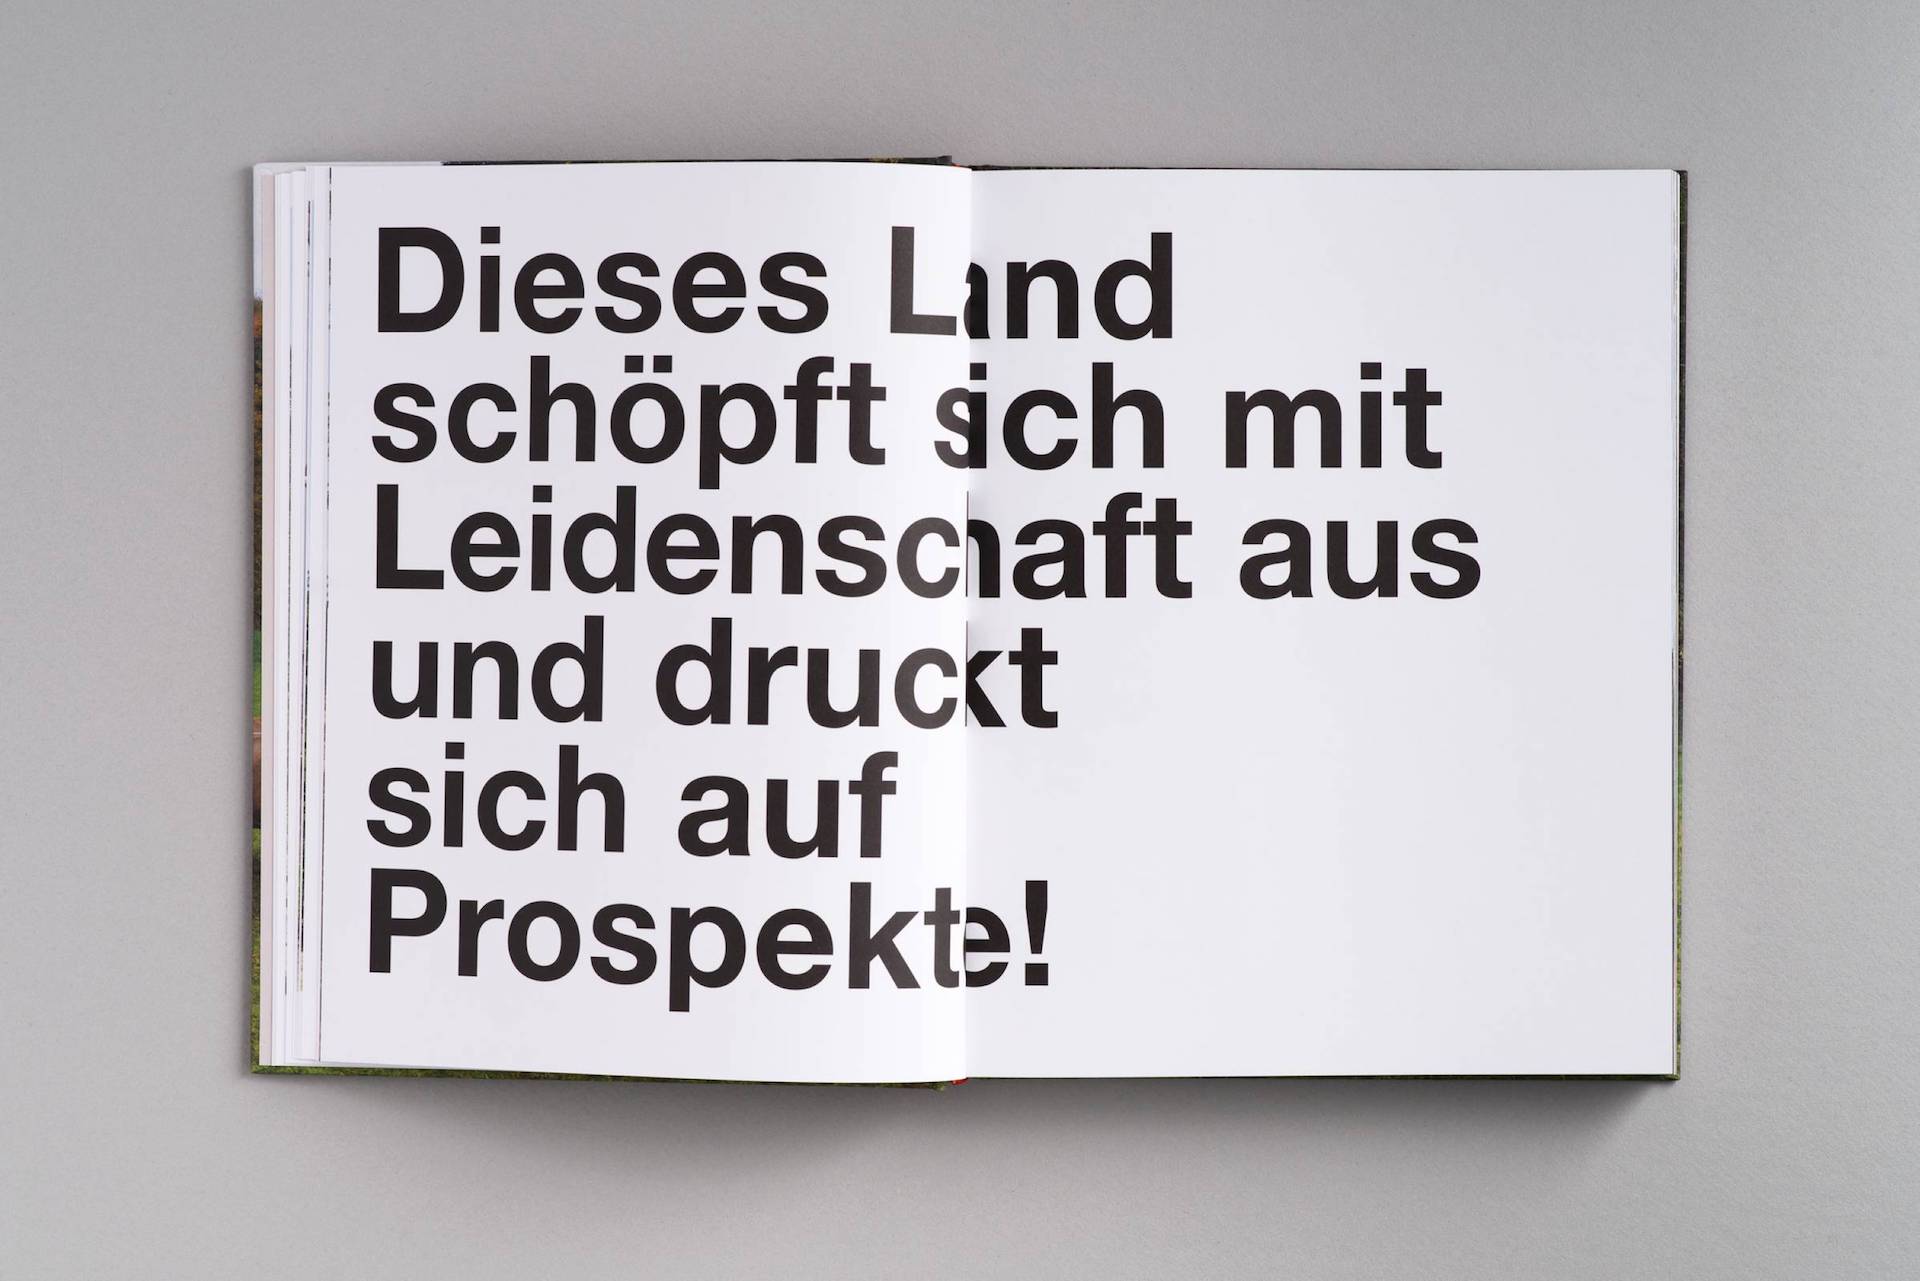 Referenz Publikation TRAFO: Die Untoten von Neuberg, Styria Verlag © Arlene Jobbes